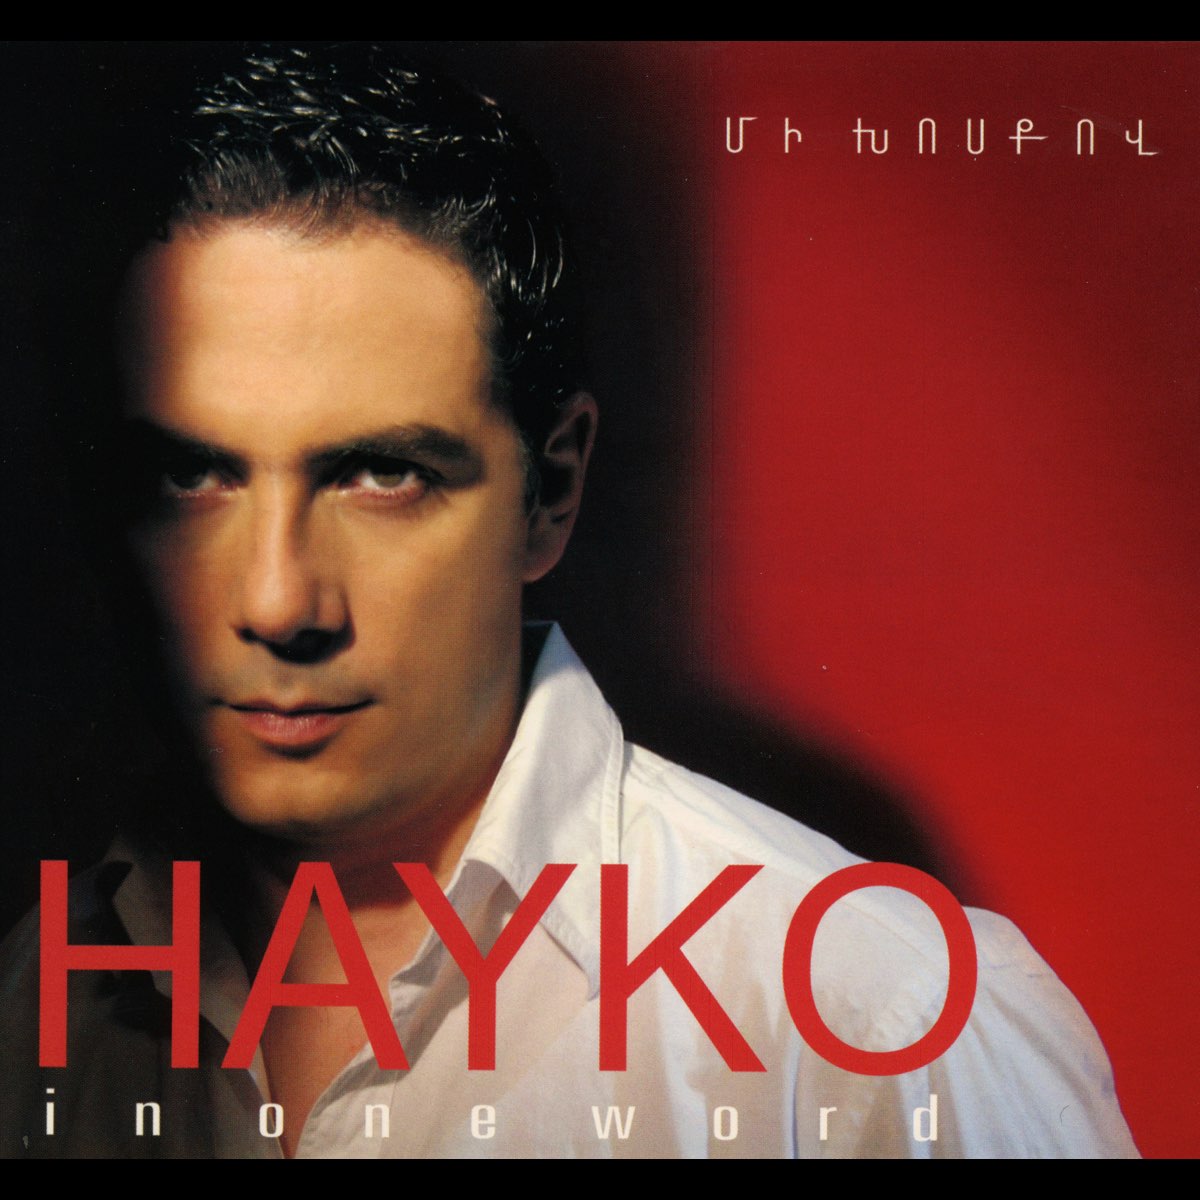 Singer Hayko